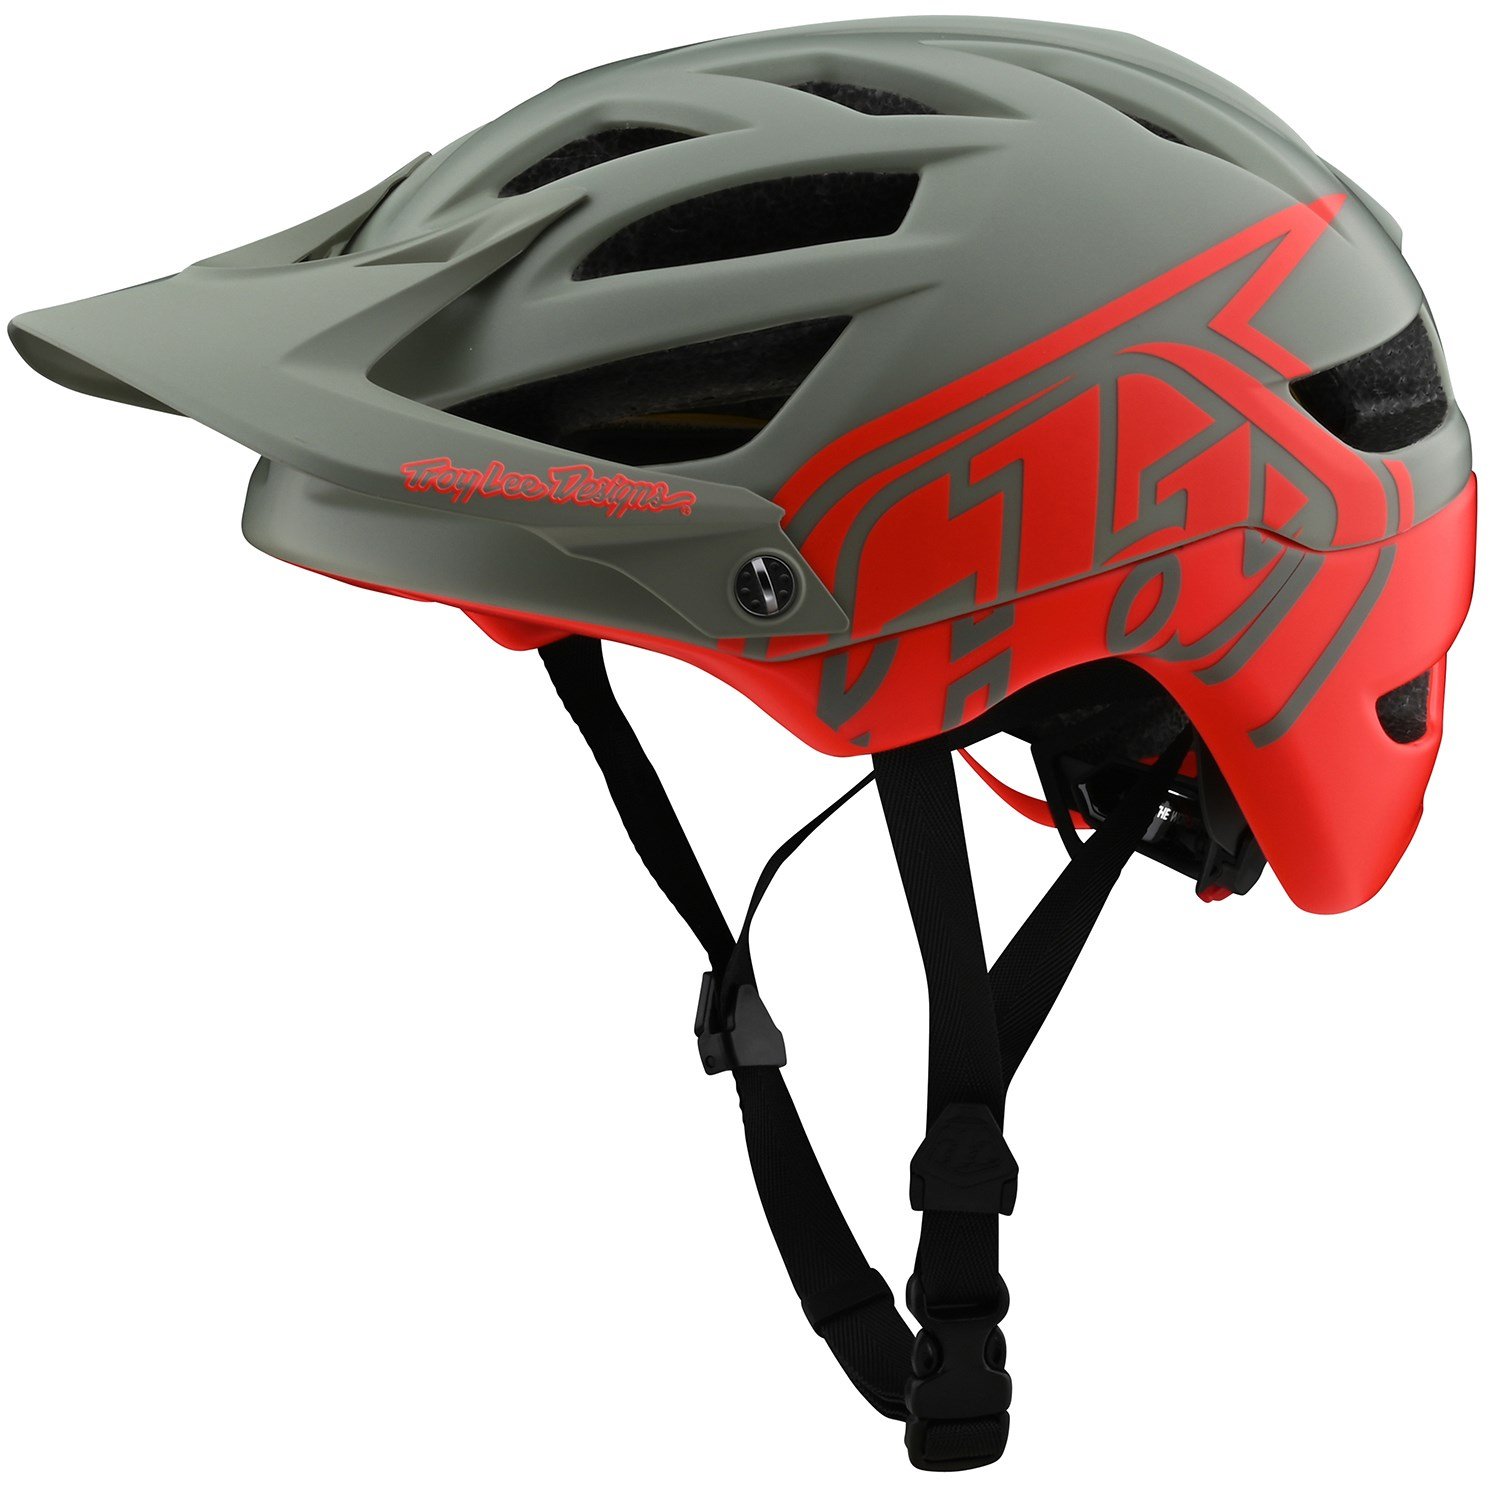 a bike helmet